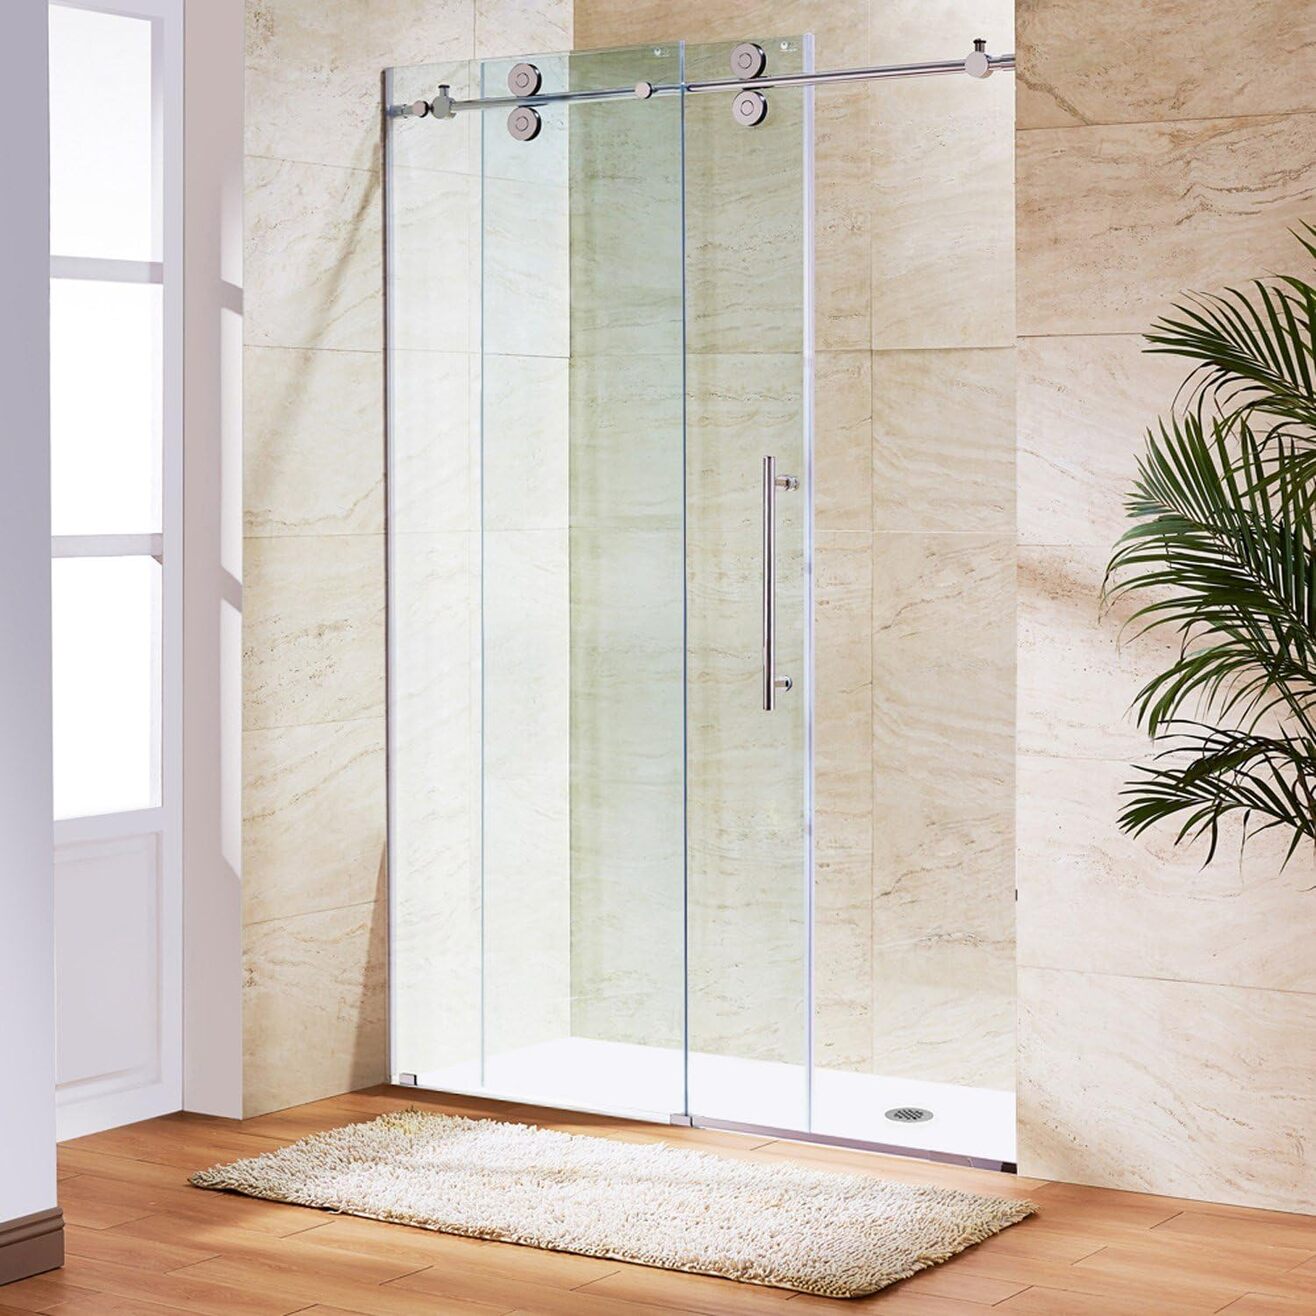 Best-Shower-Doors-–-Final-List-After-Our-Rigorous-Test-TN